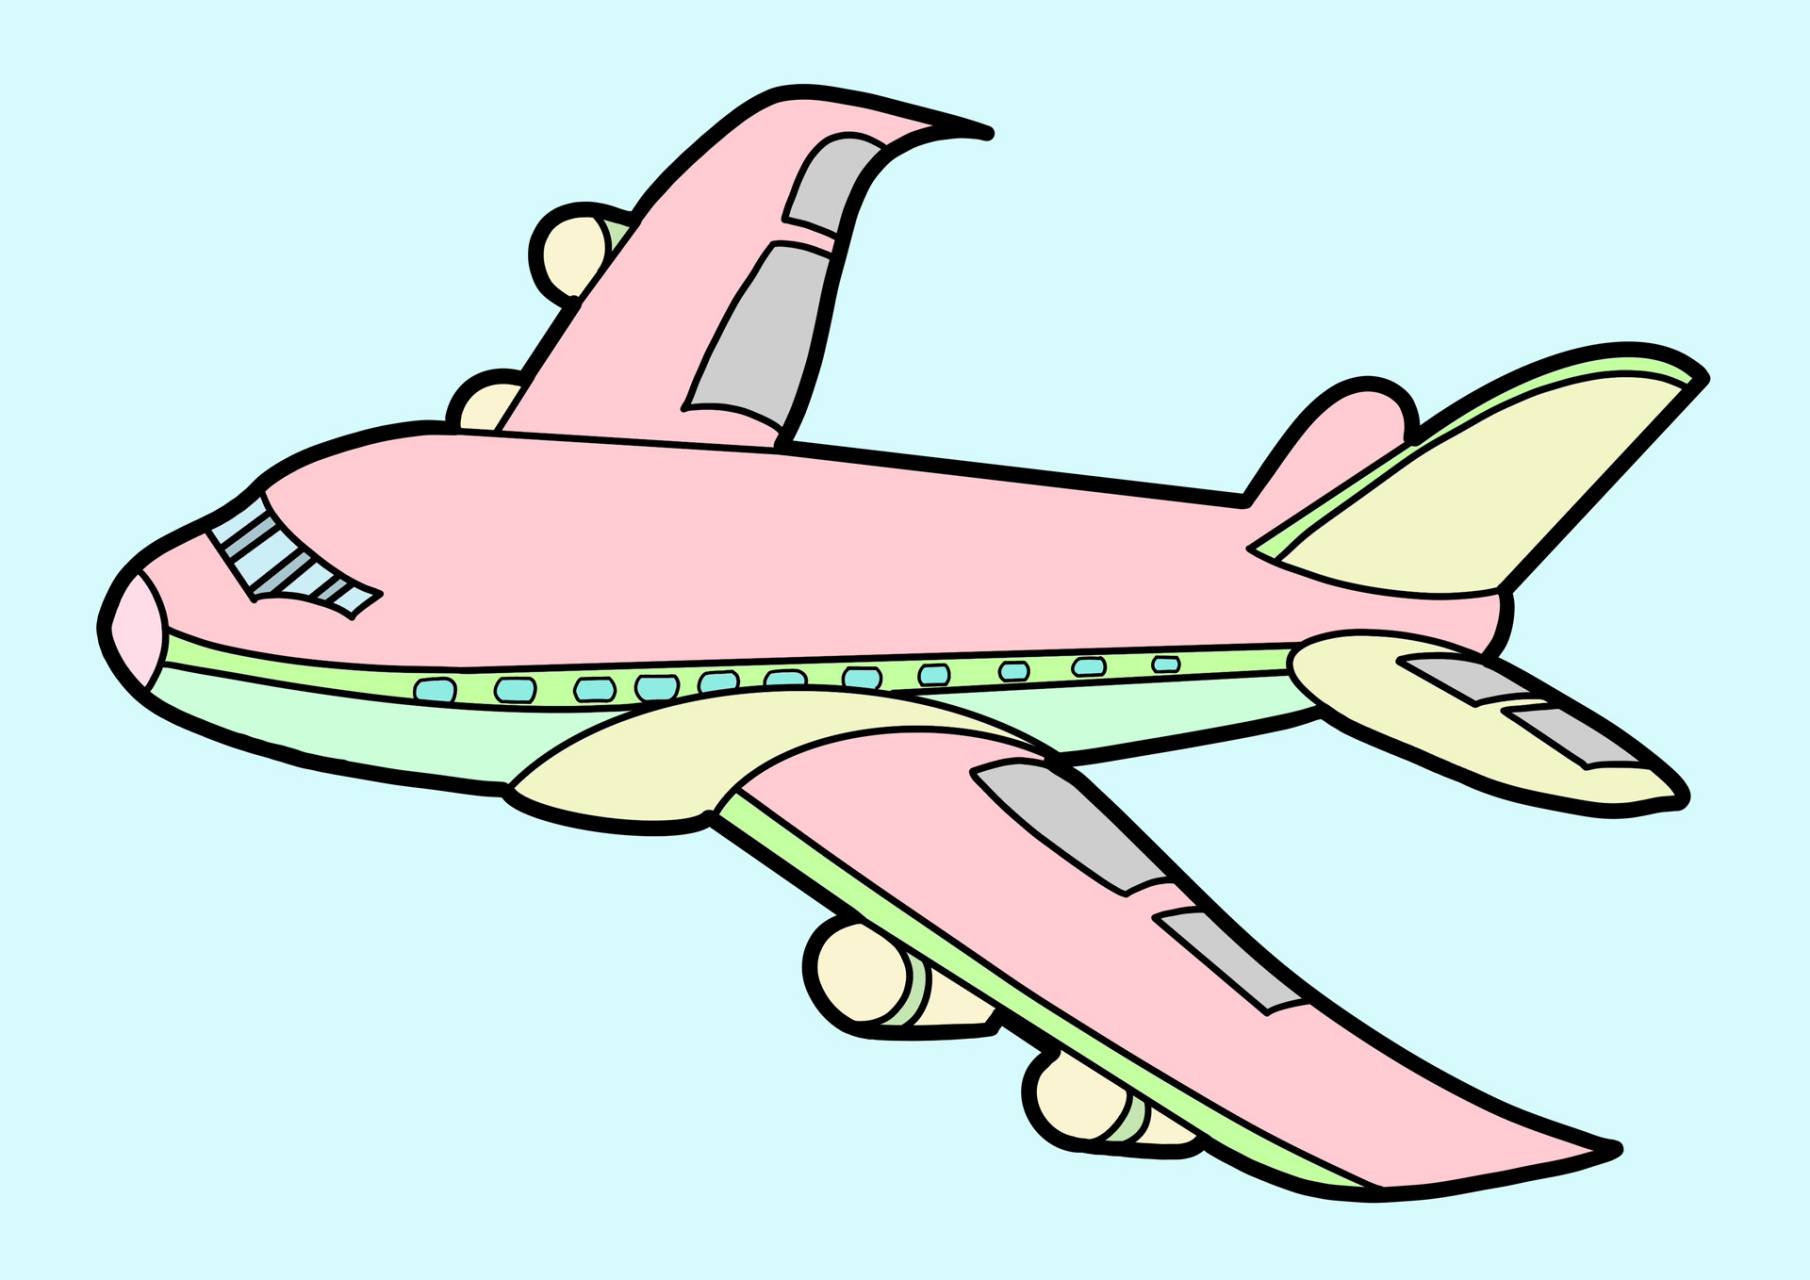 童话乐园画飞机爱奇艺图片